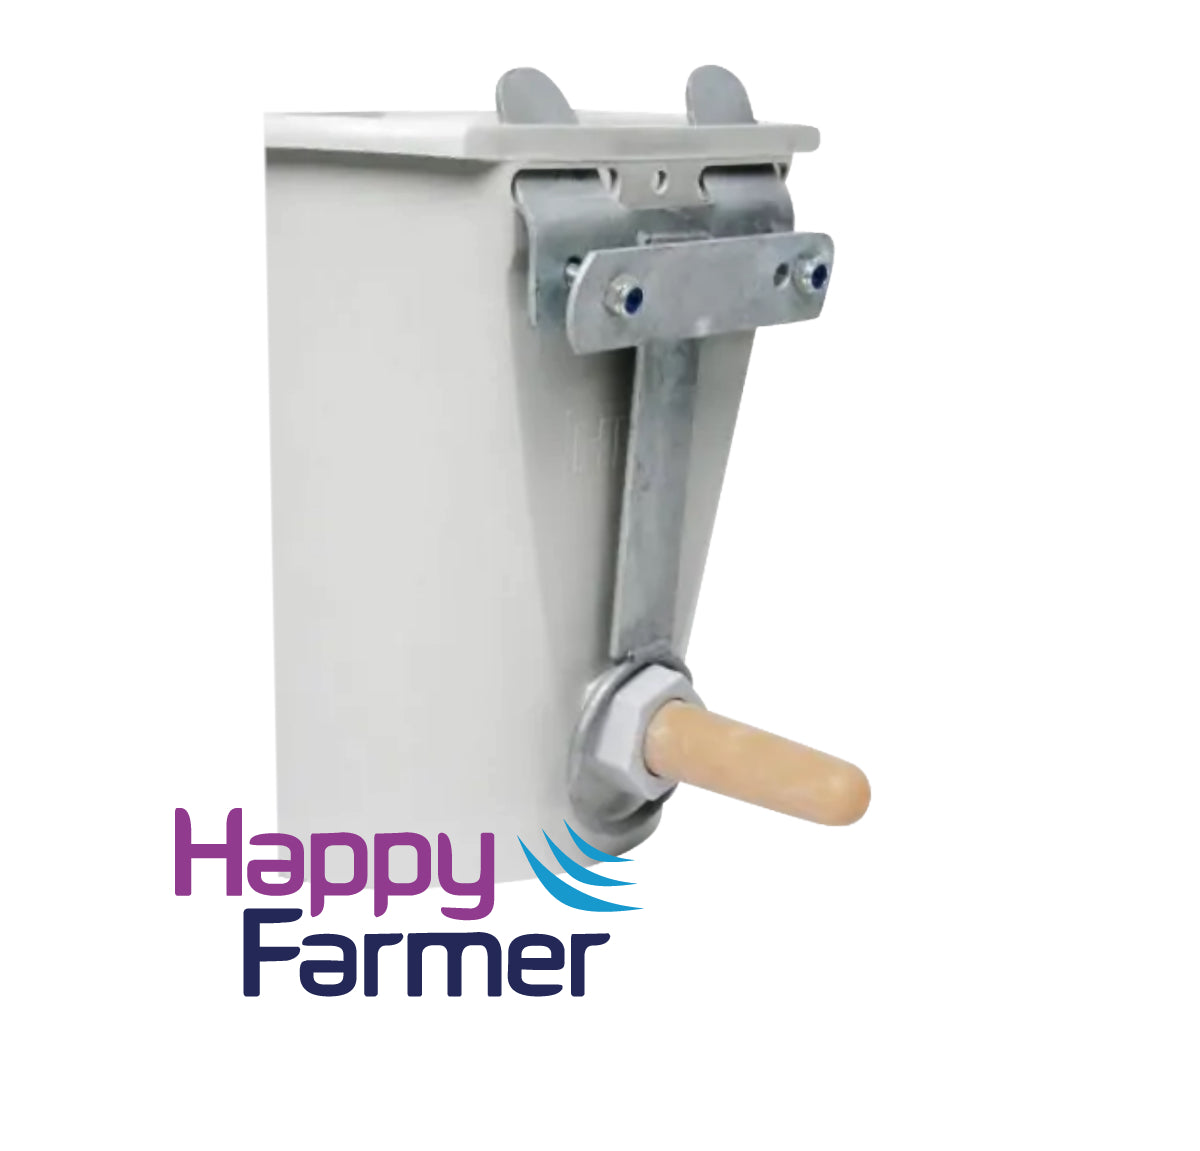 Sear bucket suspension bracket for fencing calf box